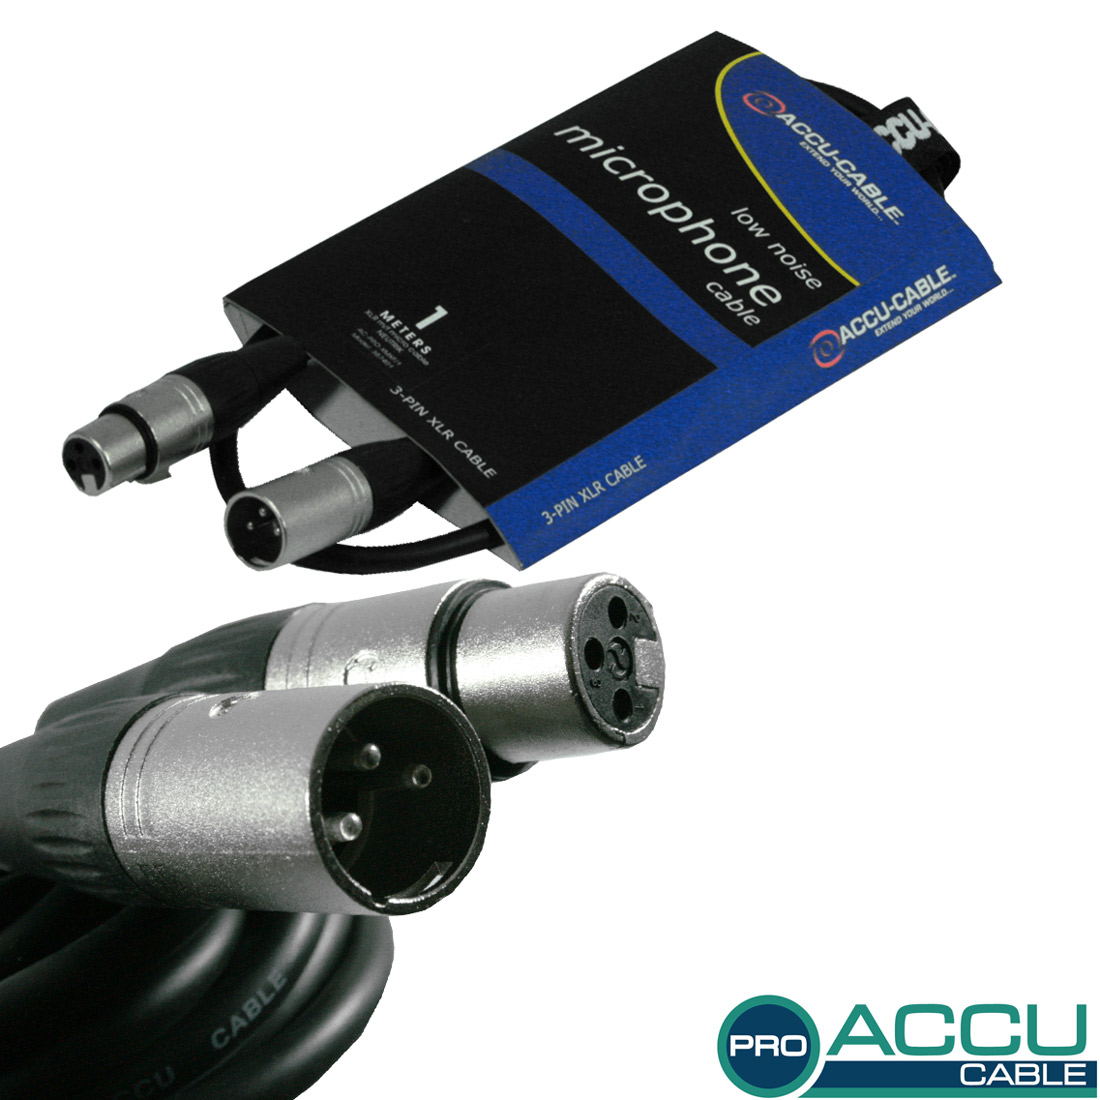 Accu Cable AC-PRO-XMXF/1 XLR m/f 1m